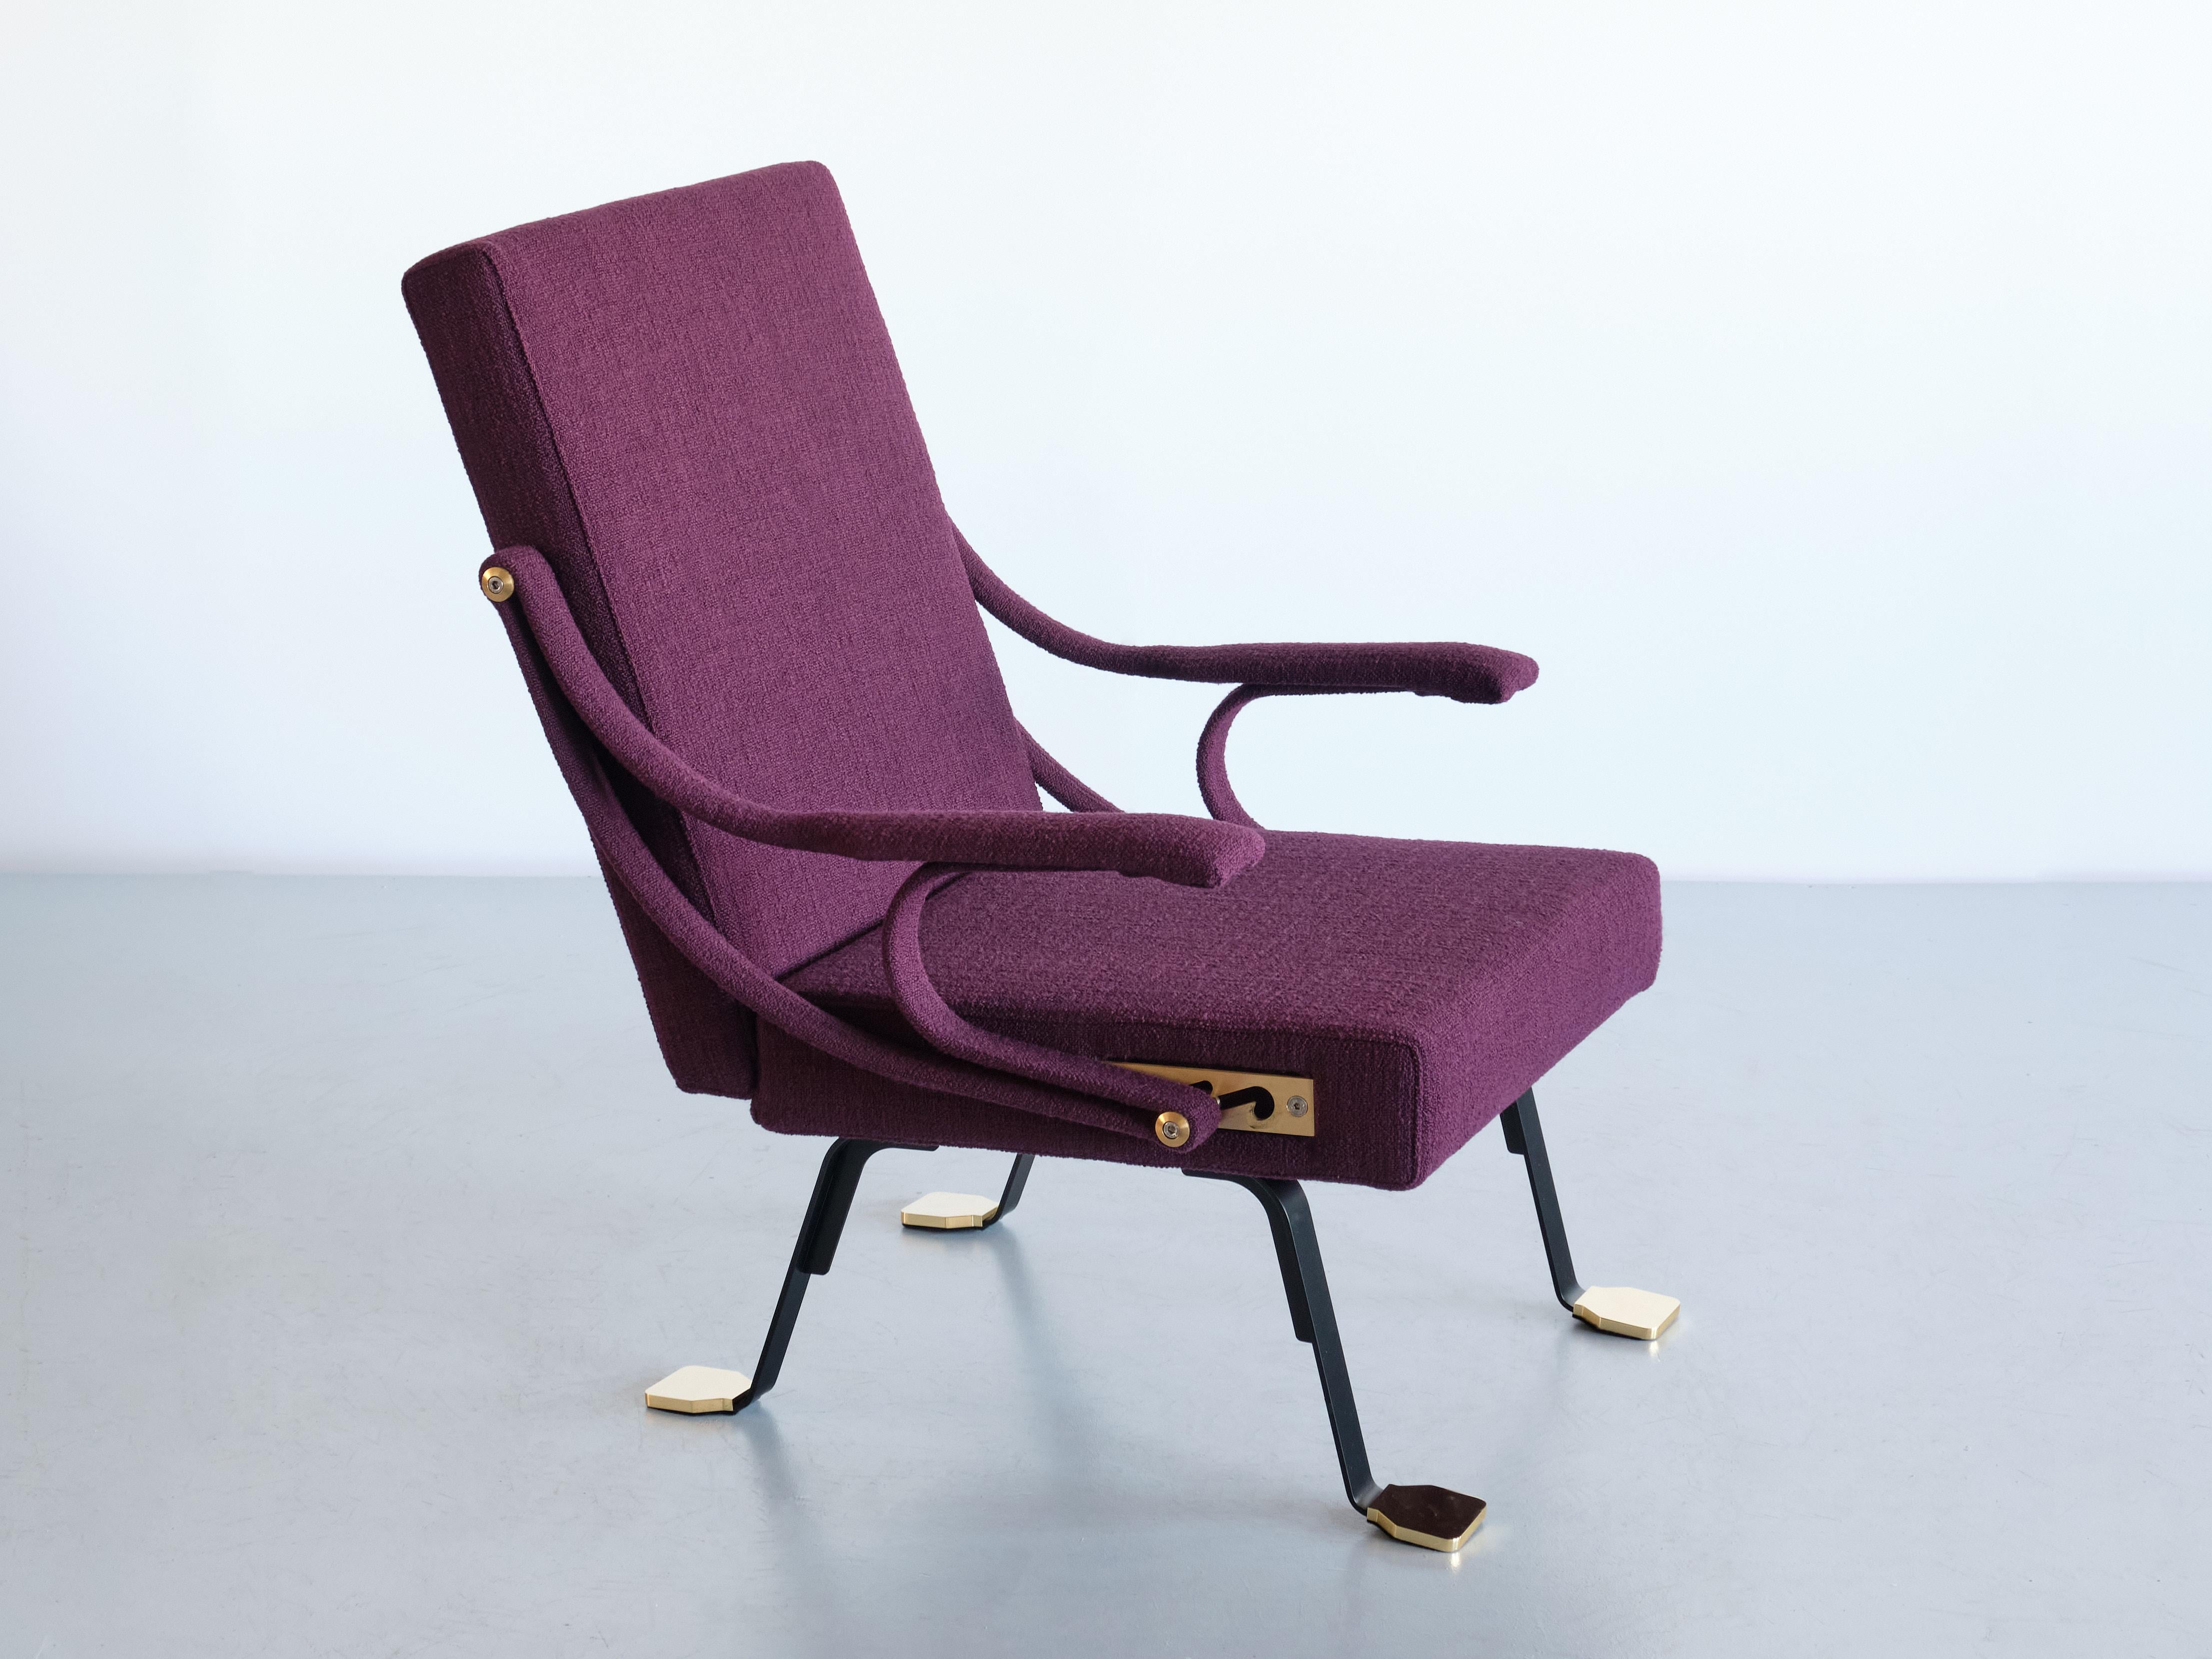 Conçue par Ignazio Gardella en 1957, la chaise longue Digamma est une chaise confortable qui s'inscrit dans la tradition du modernisme italien tardif. Sa construction rationnelle présente deux sections géométriques - le dossier et l'assise